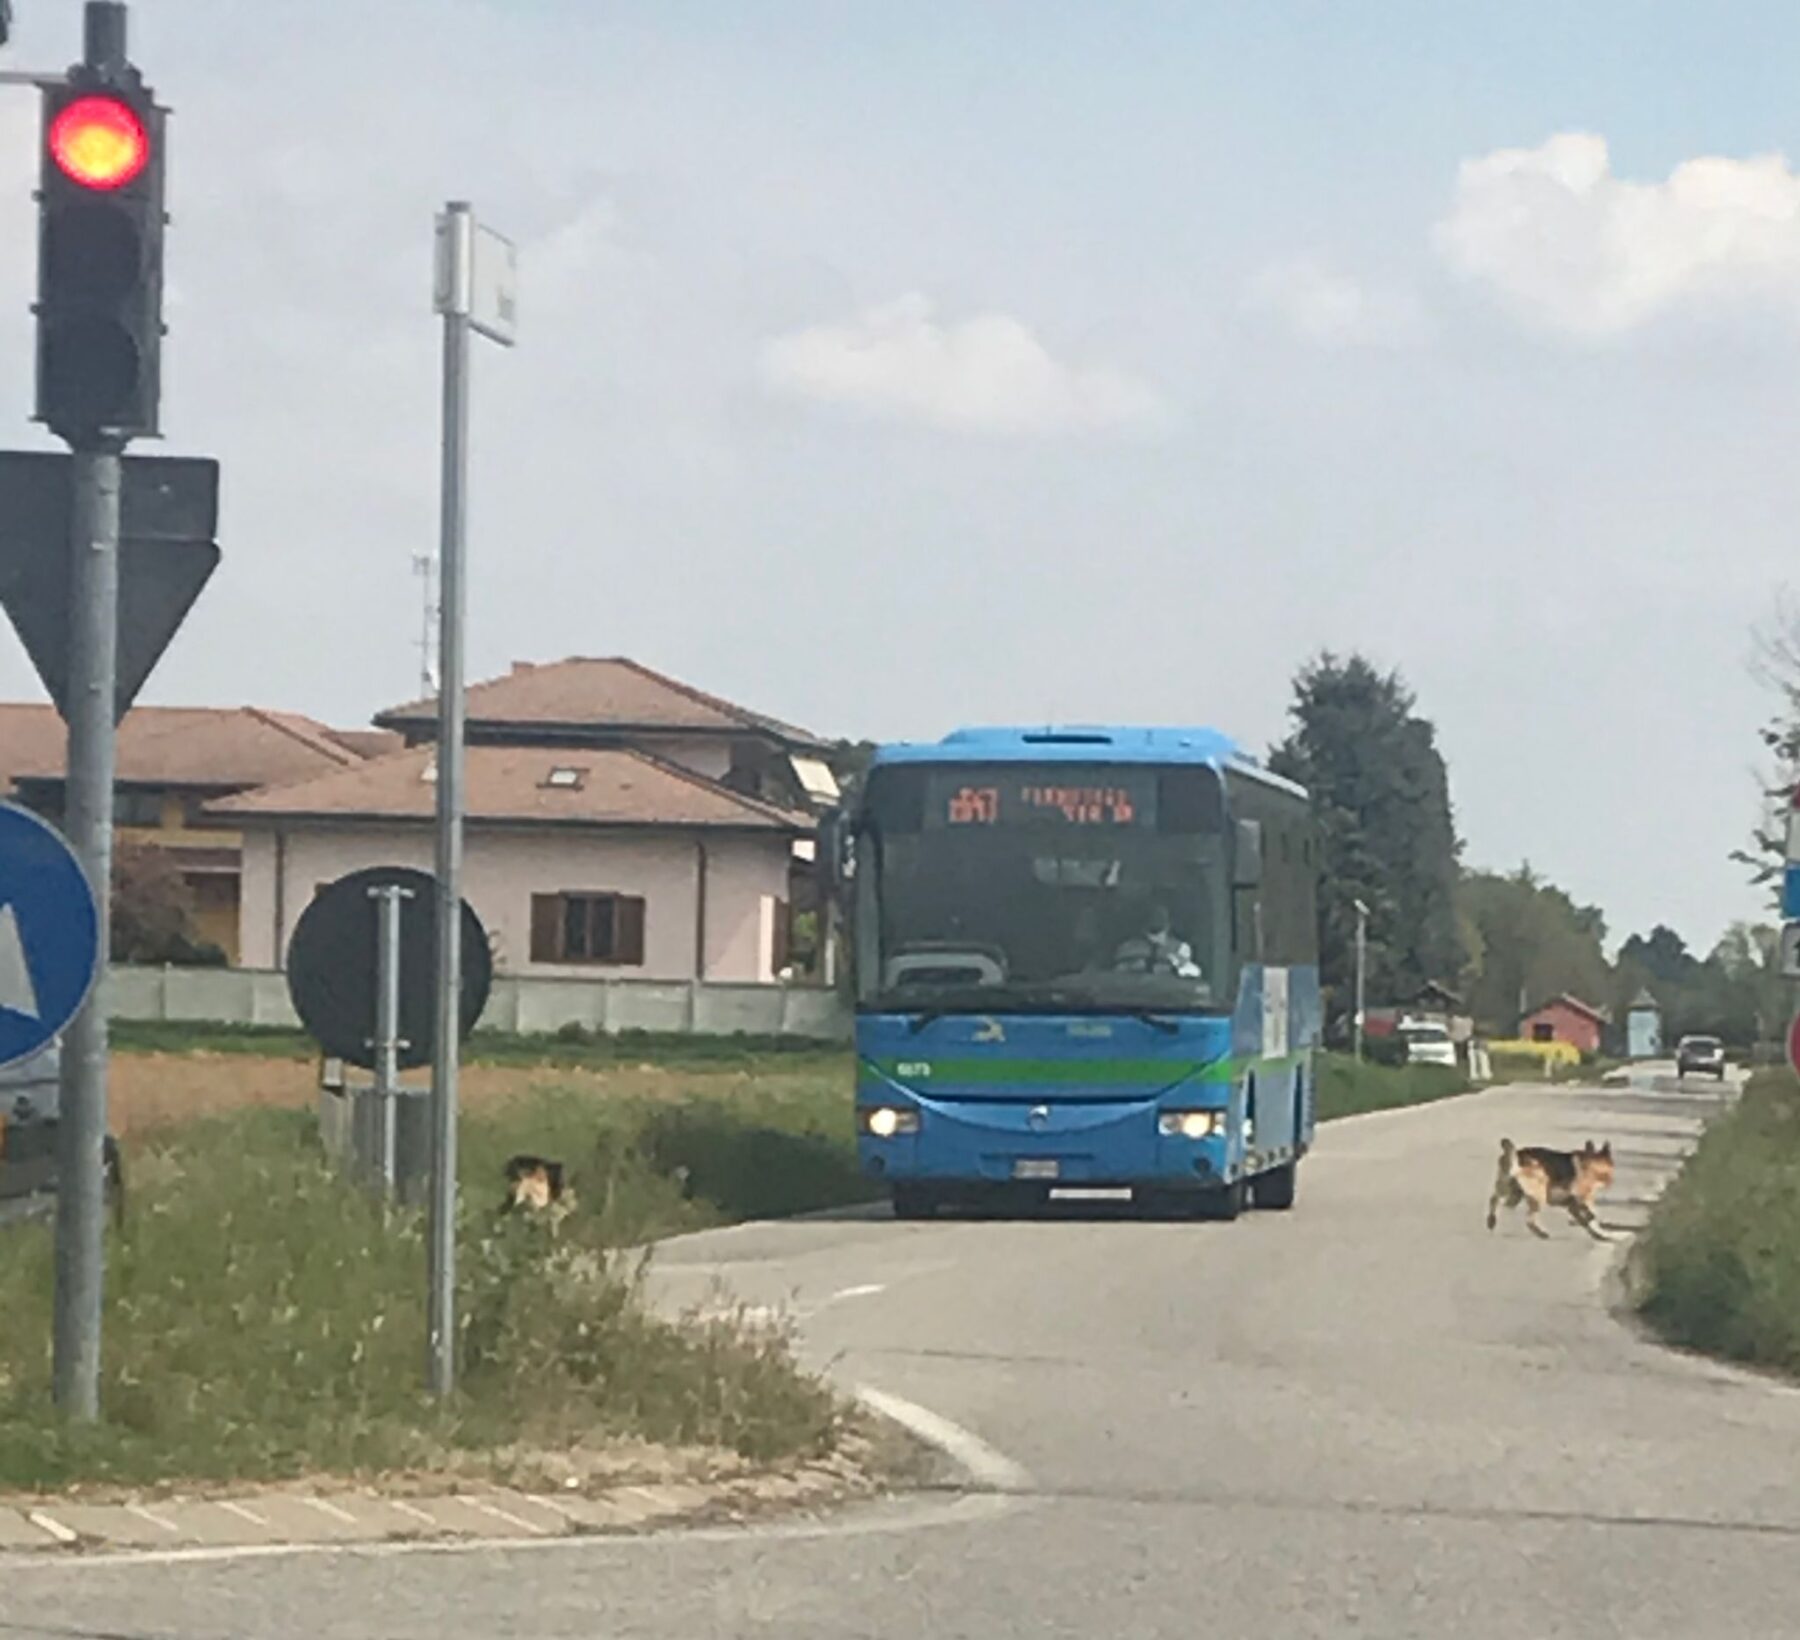 . Rubano estintori per danneggiare i bus: 8 minori fermati a Milano - 16/06/2021